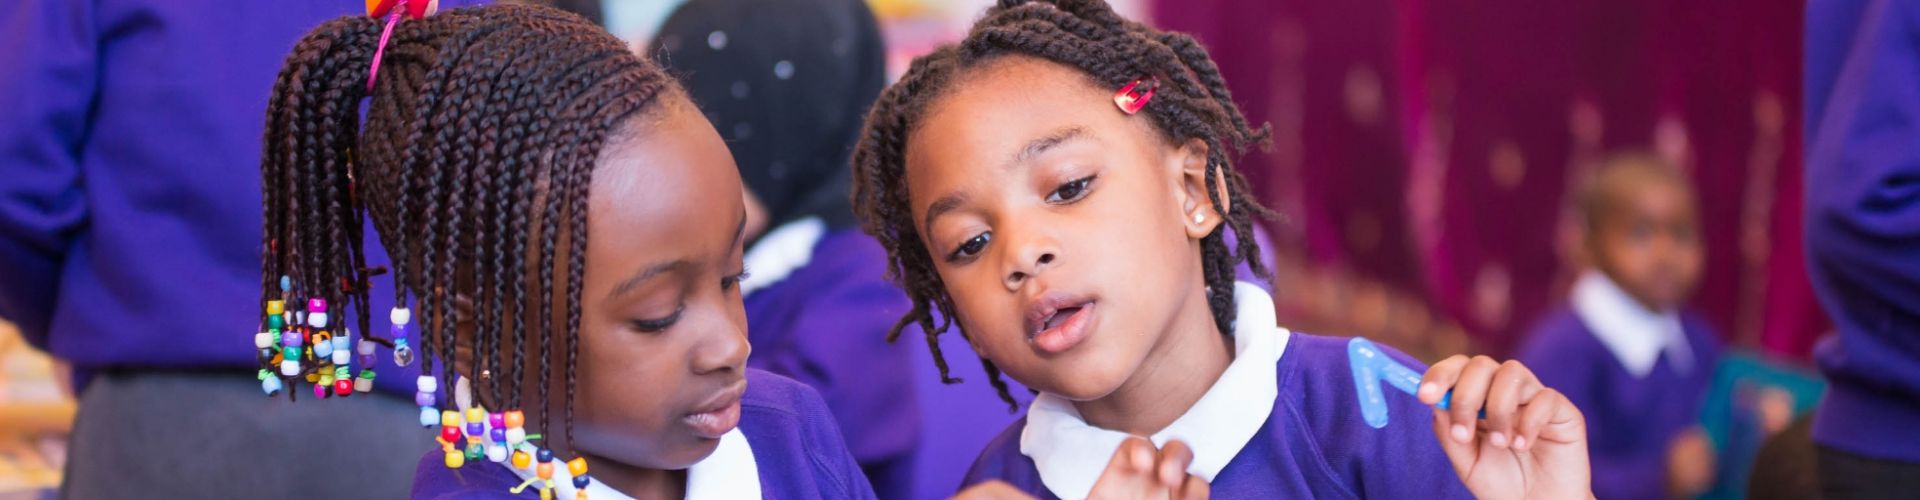 Conway Primary School - ClassDigest.com - Find best preschools, schools ...